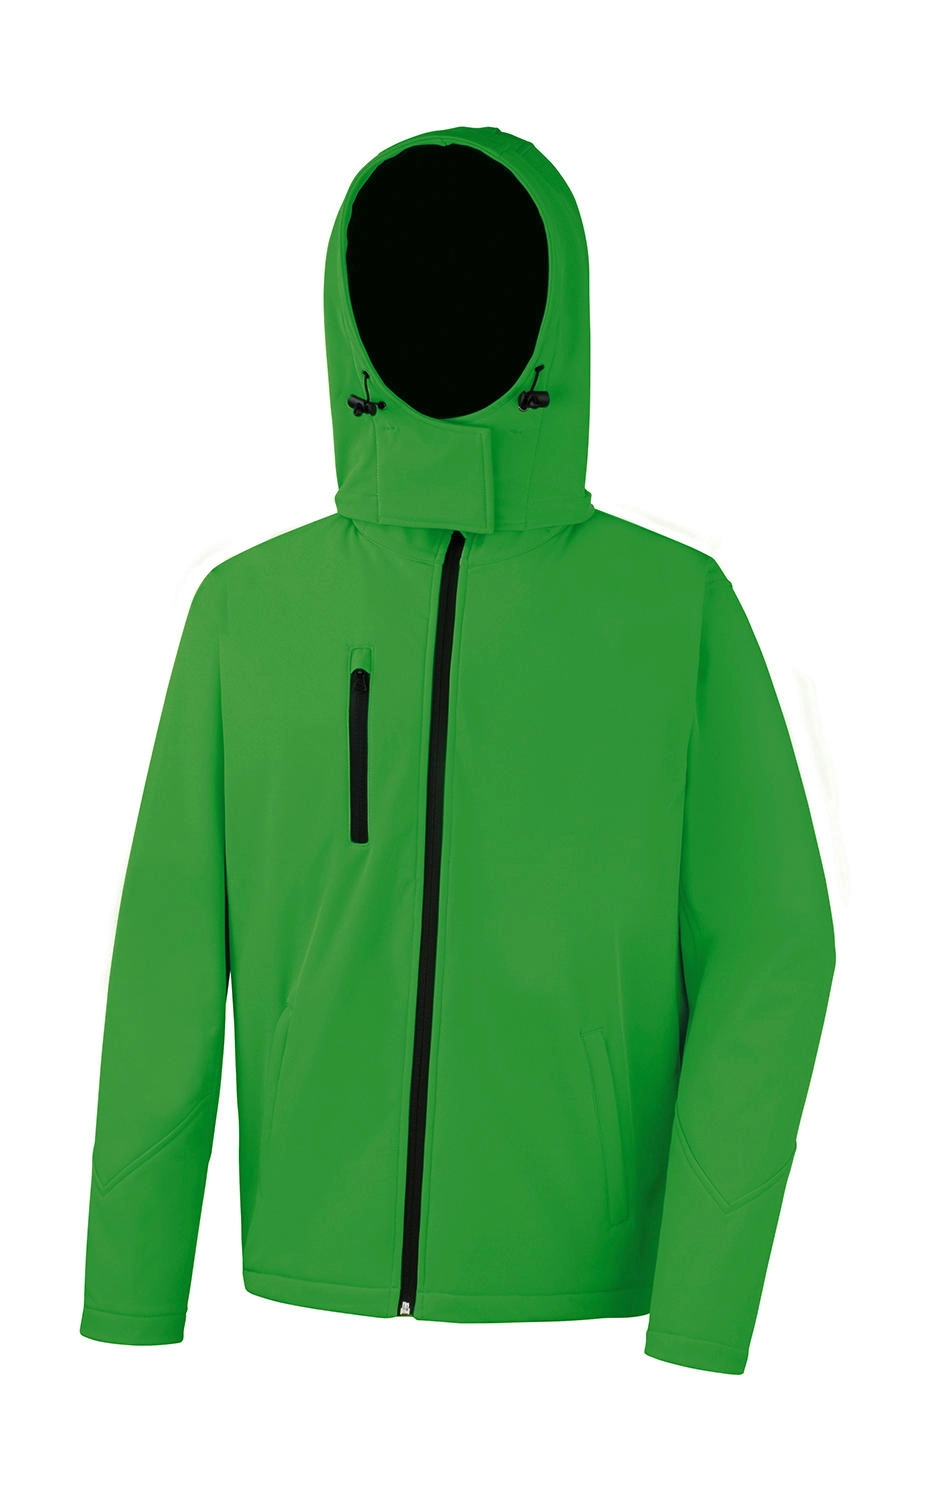 TX Performance Hooded Softshell Jacket zum Besticken und Bedrucken in der Farbe Vivid Green/Black mit Ihren Logo, Schriftzug oder Motiv.